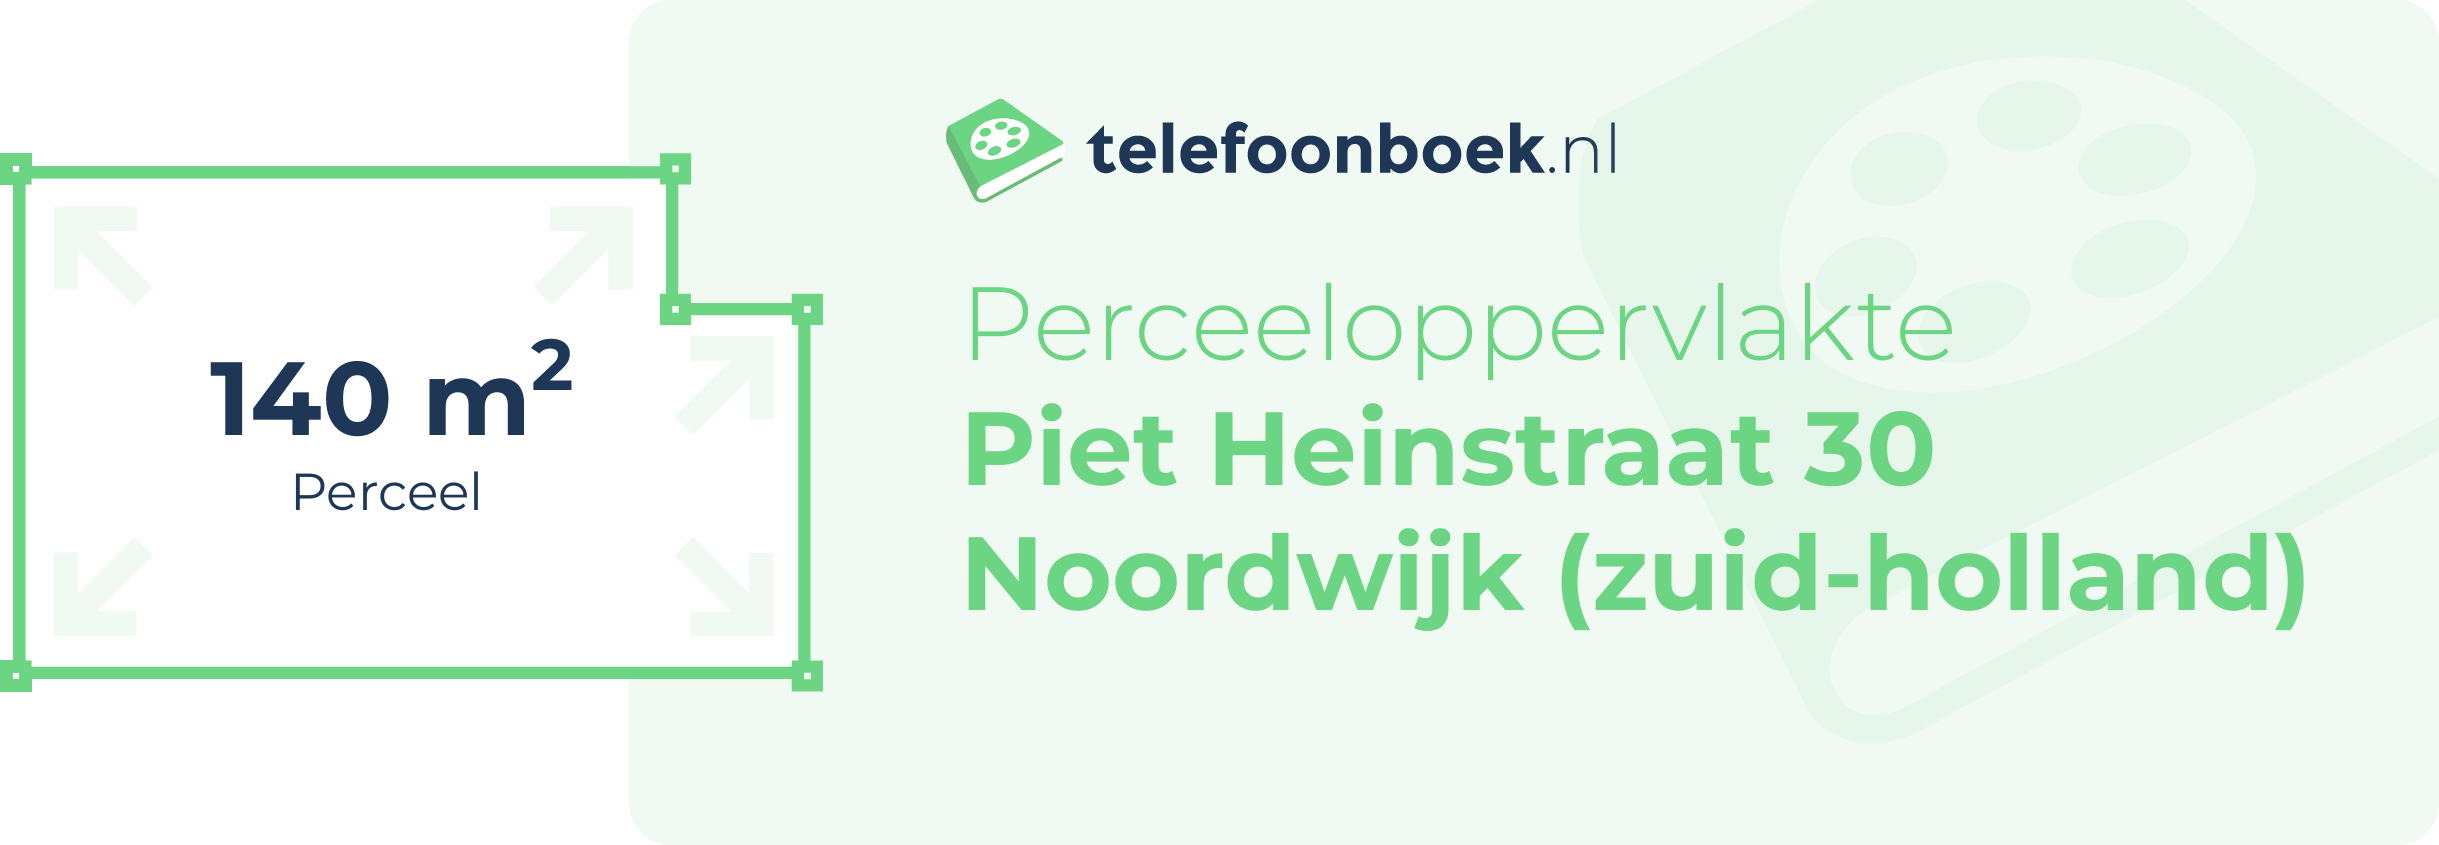 Perceeloppervlakte Piet Heinstraat 30 Noordwijk (Zuid-Holland)